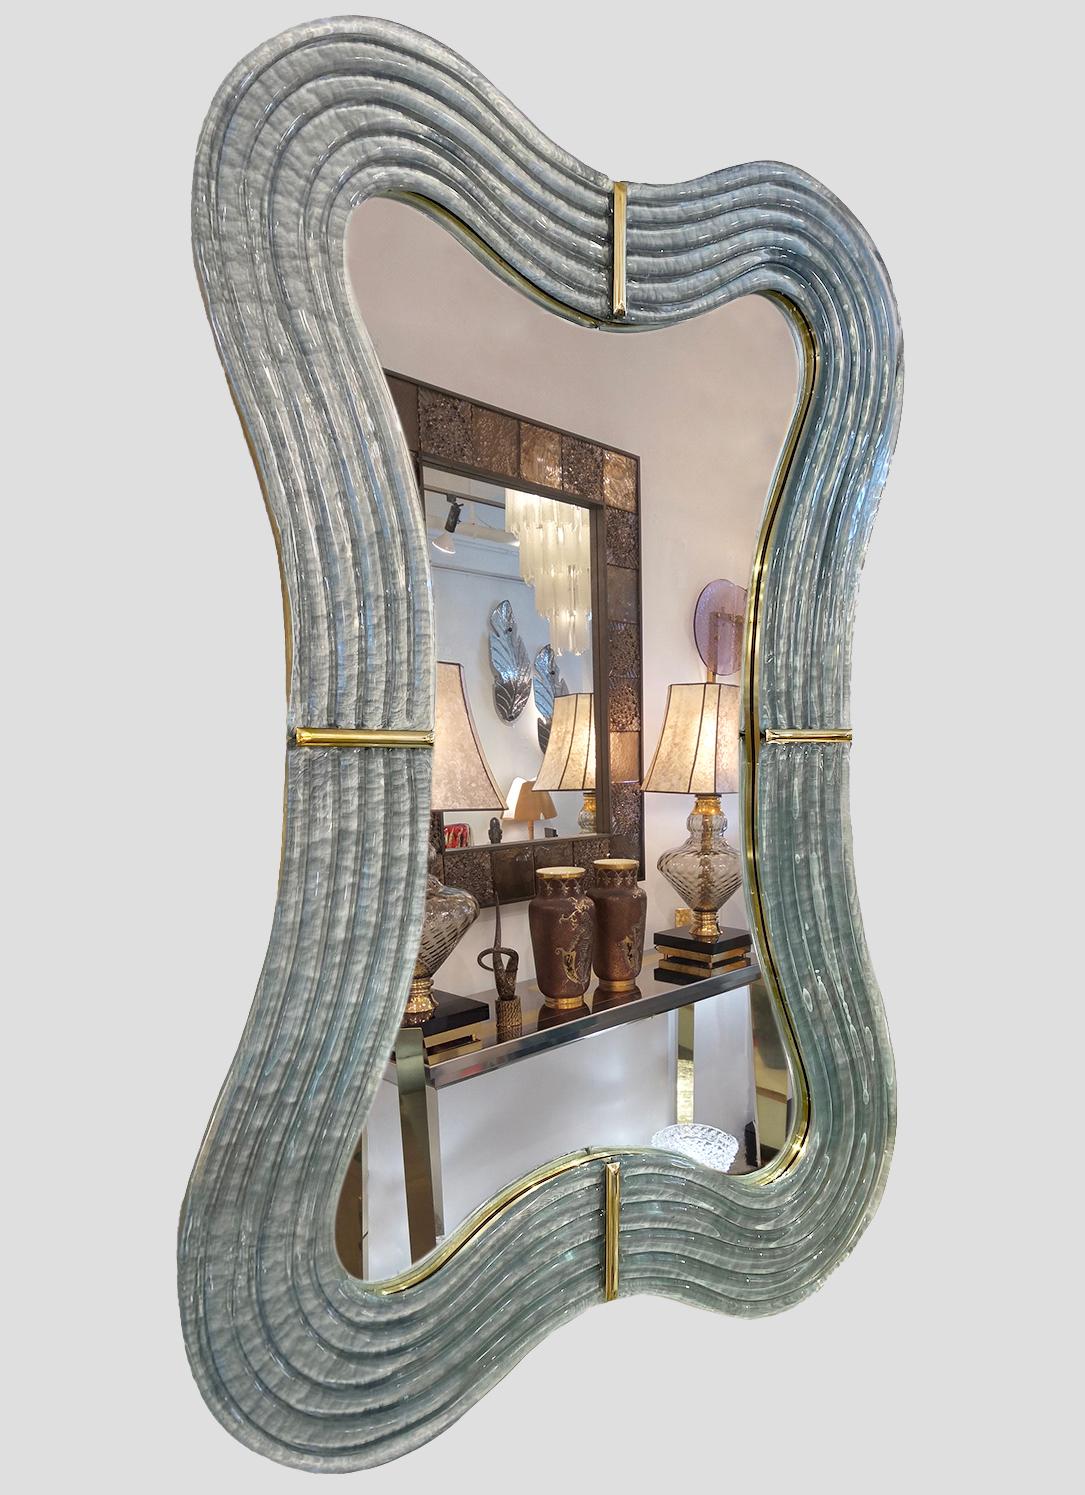 Ce miroir vénitien apporte une sensation d'apaisement sensuel avec sa silhouette incurvée, entièrement fabriquée à la main en Italie. La forme ondulée sexy présente un savoir-faire exquis : le dossier en bois sculpté à la main, entièrement bordé de